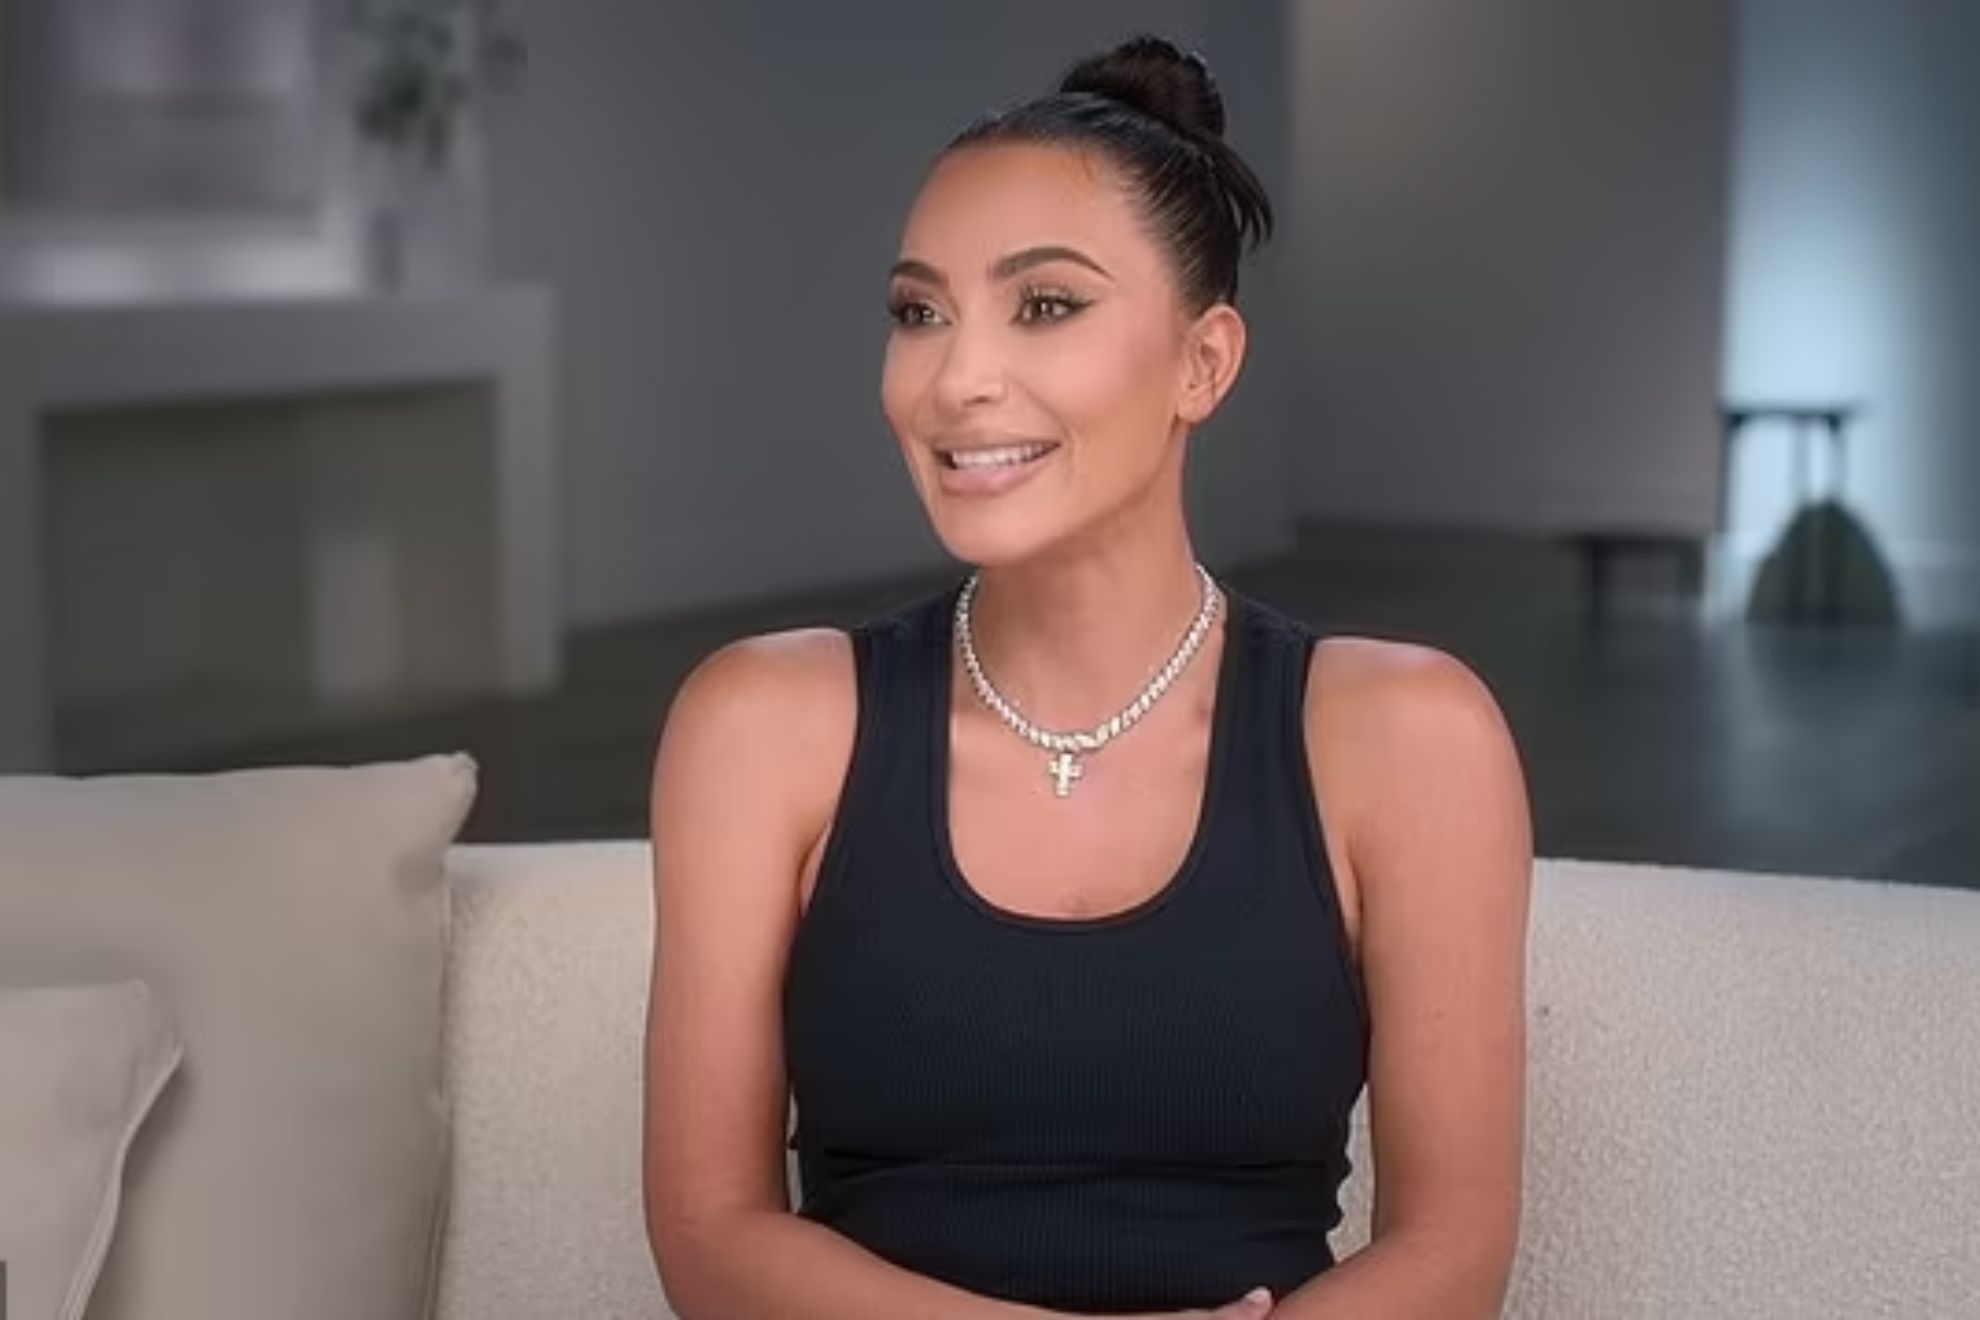 Wardrobe malfunction left Kim Kardashian in a bind